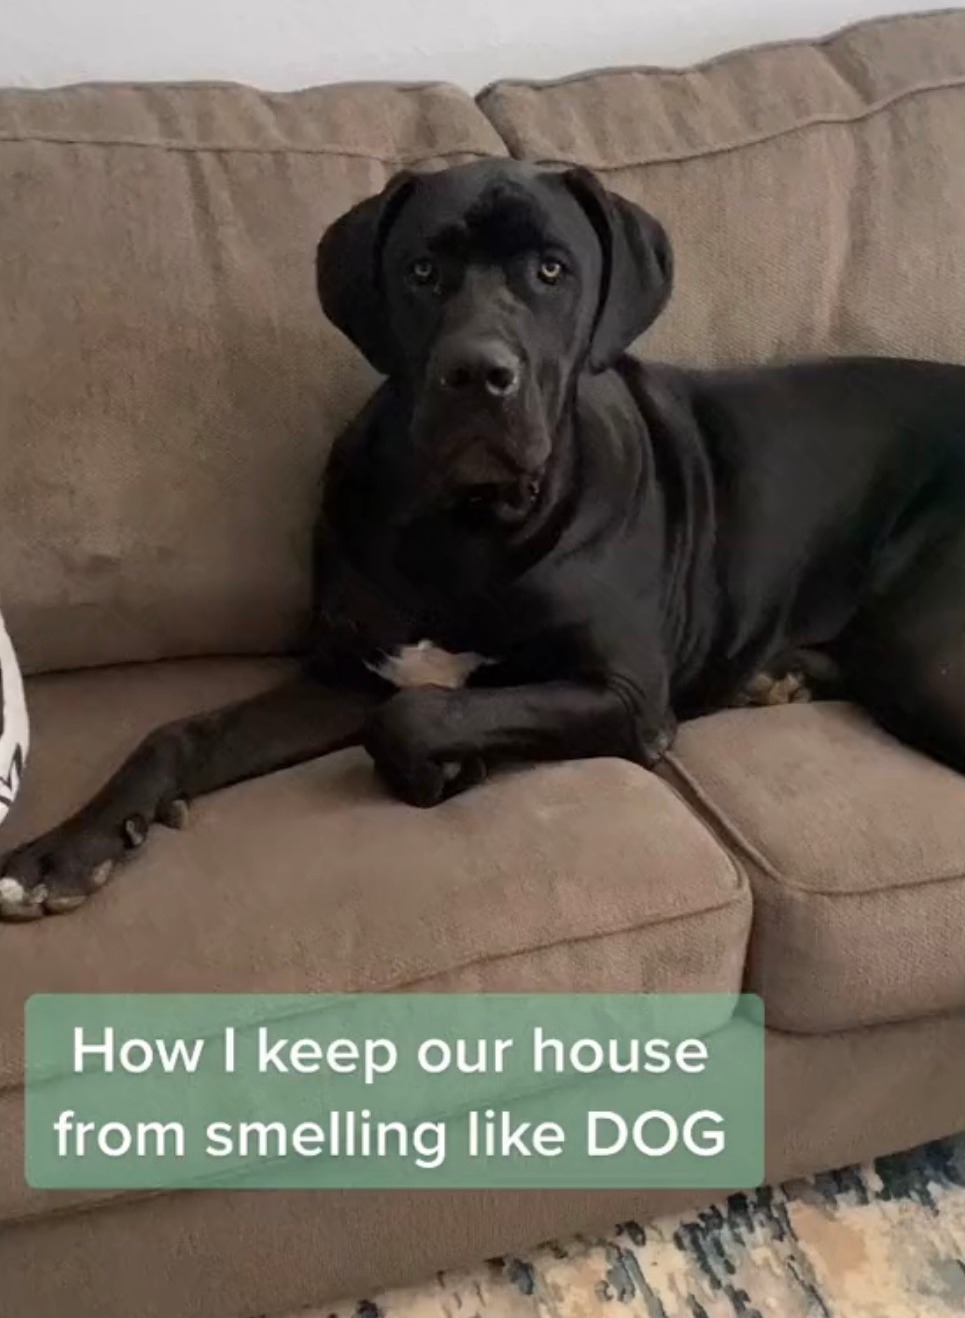 Die Zwei-Zutaten-Lösung verhinderte, dass ihr Haus nach dem Geruch ihrer drei Hunde roch